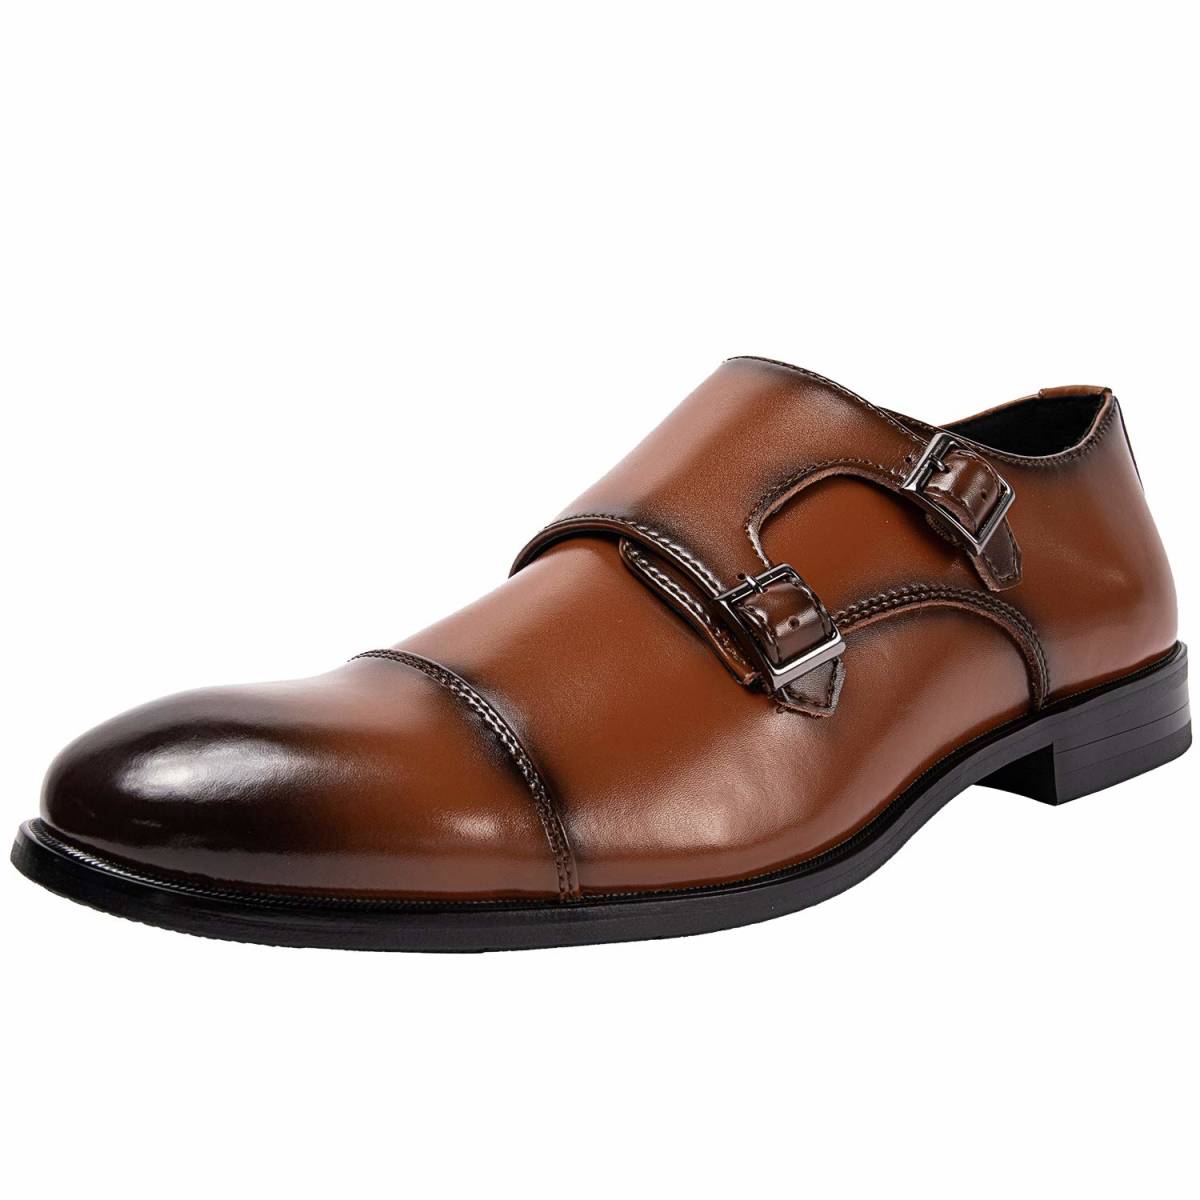 本革 ビジネスシューズ 新品 高級感 ブラウン 茶色 お洒落 革靴 紳士靴 28cm 28.0cm_画像1